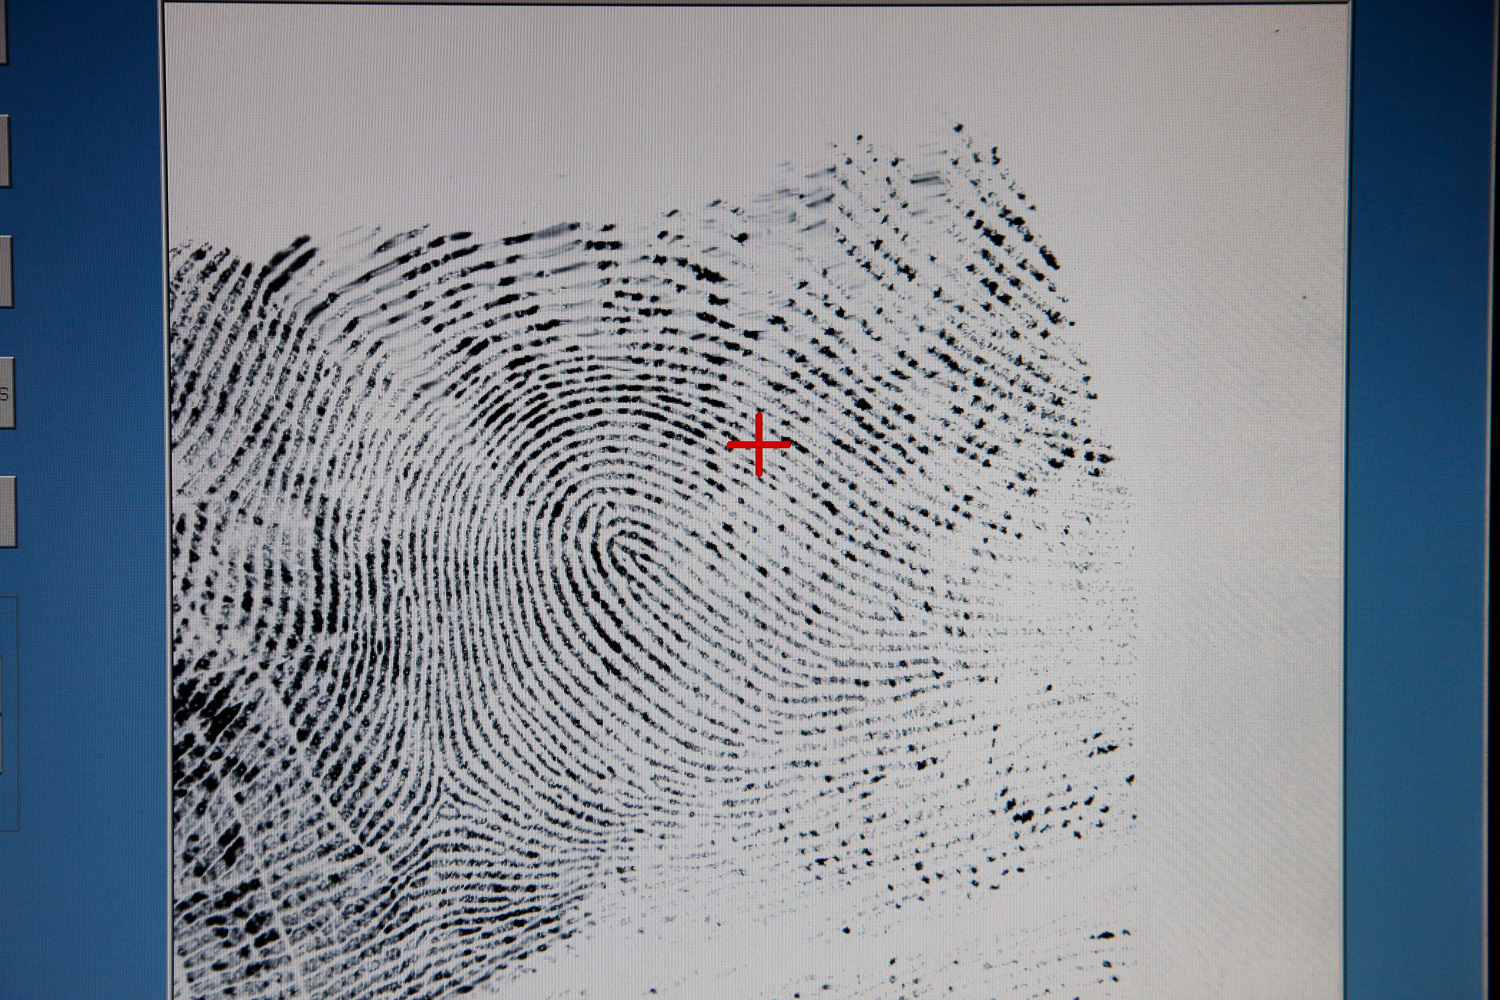 Scan of a fingerprint for evaluation